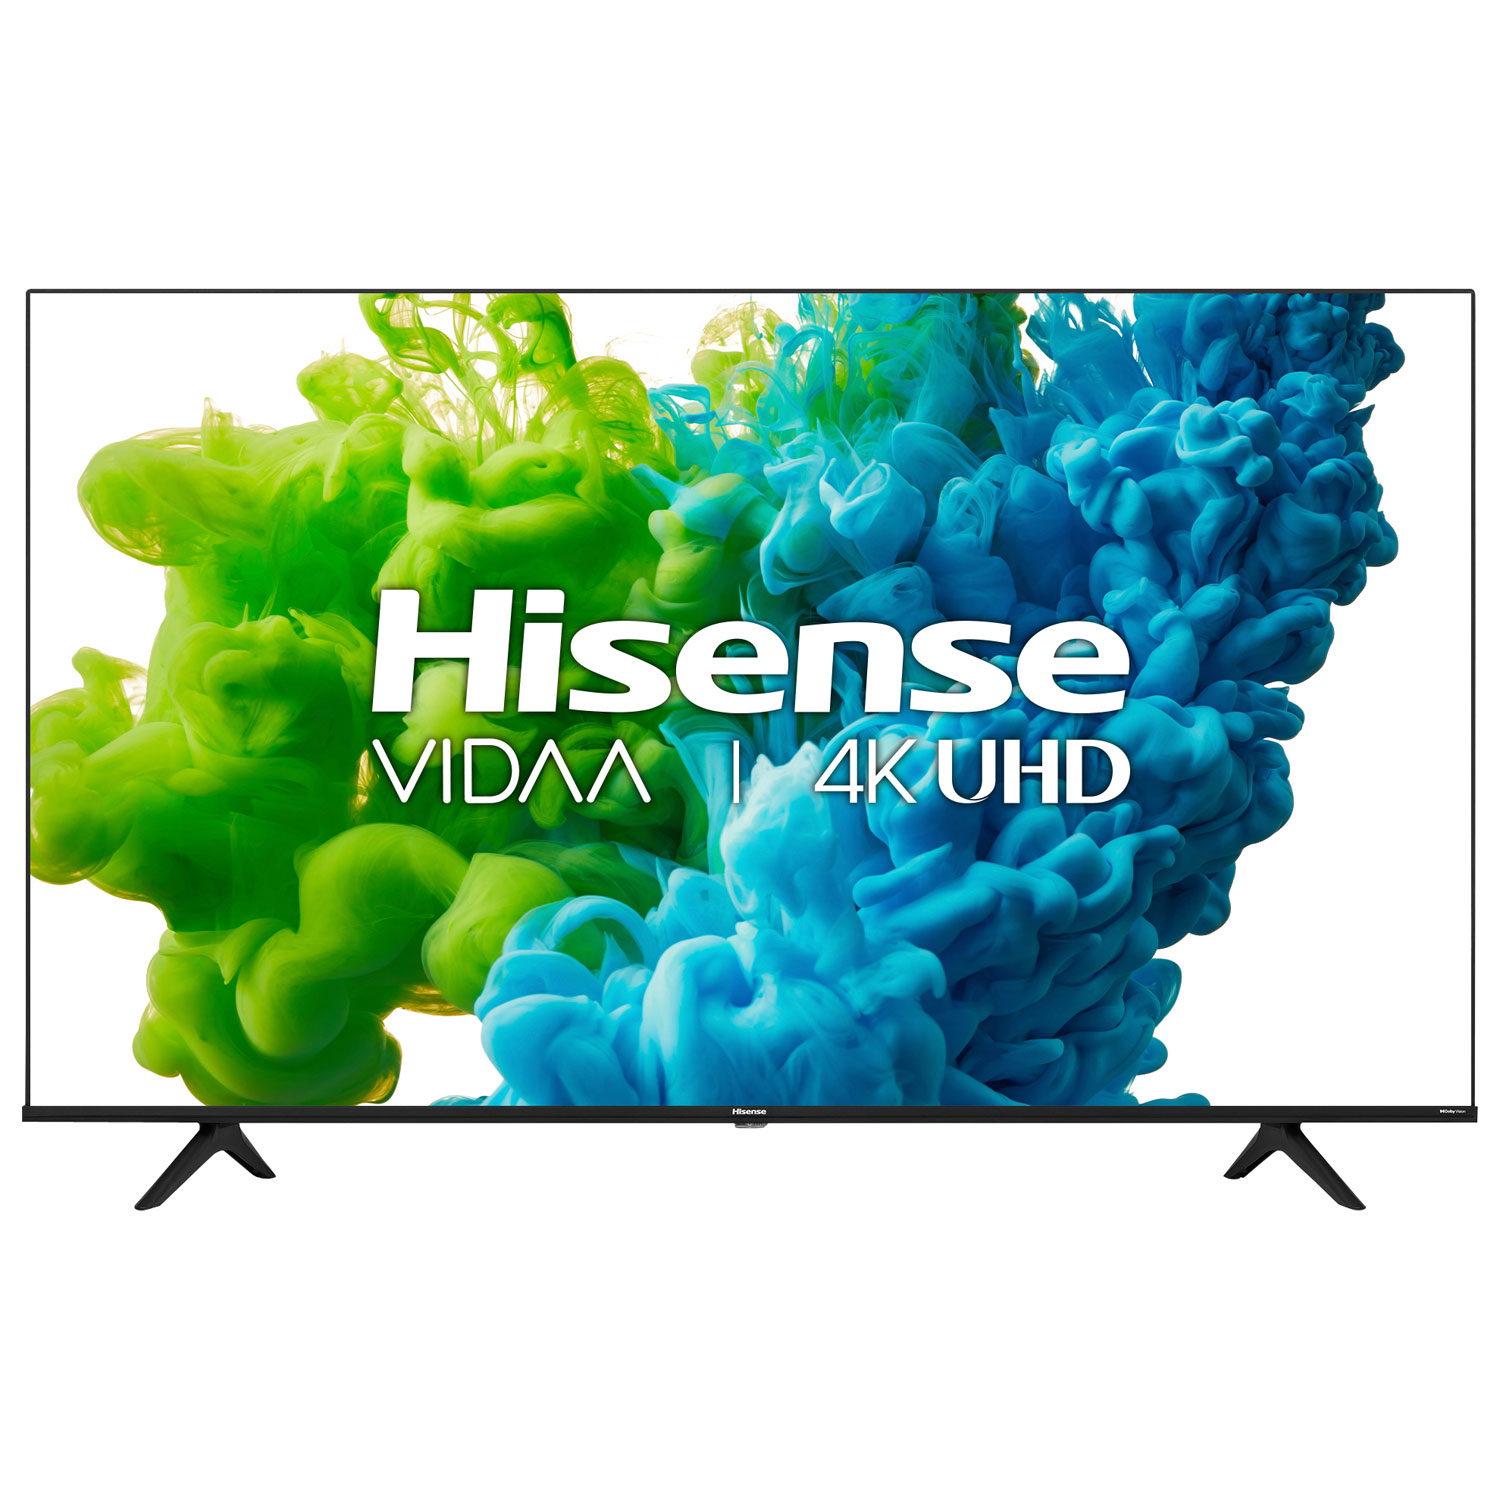 Hisense 55" 4K UHD HDR LED Vidaa Smart TV (55A6GV) - 2021